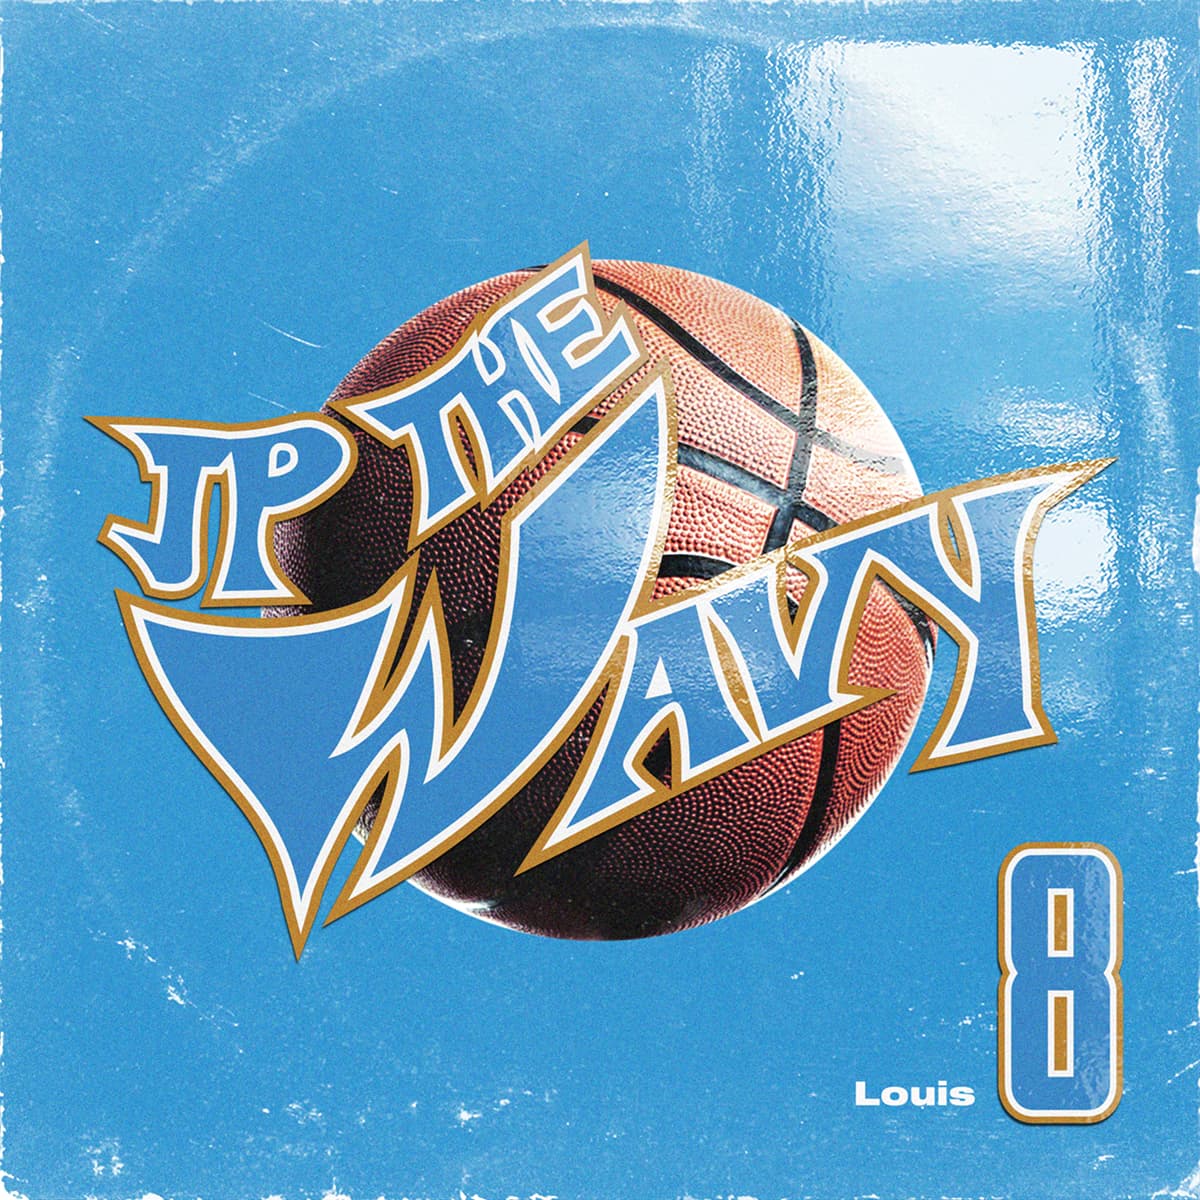 JP THE WAVY Digital Single “Louis 8” Release